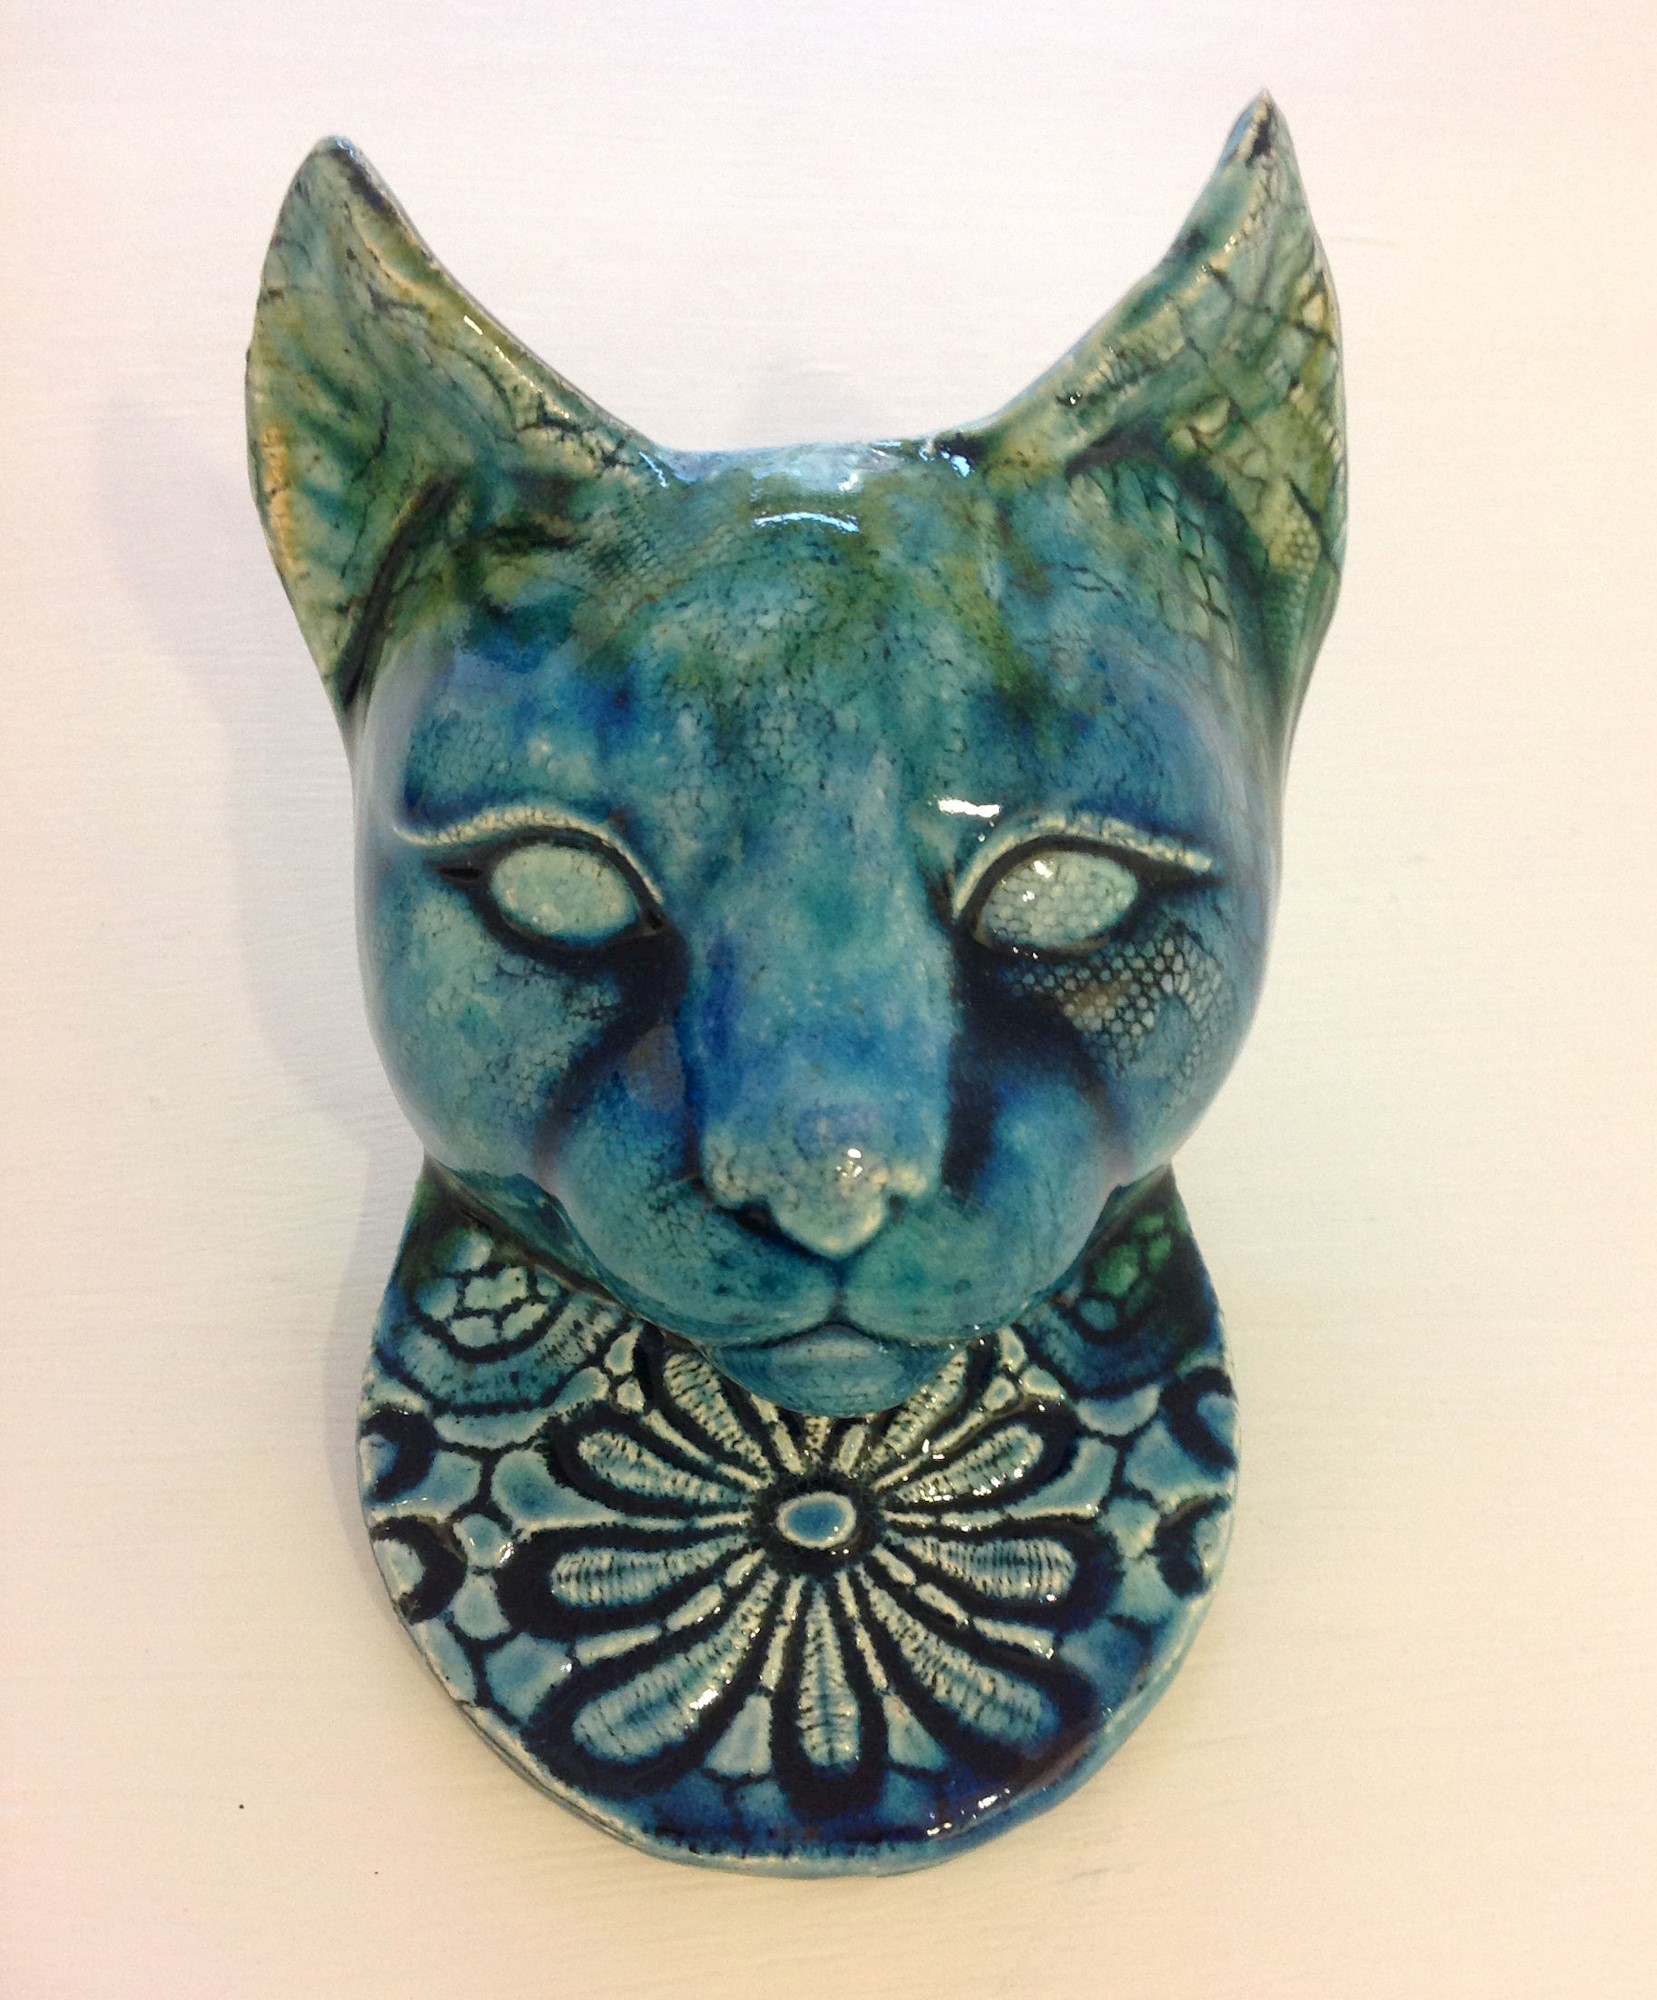 'Cat Mask V' by artist Julian Smith